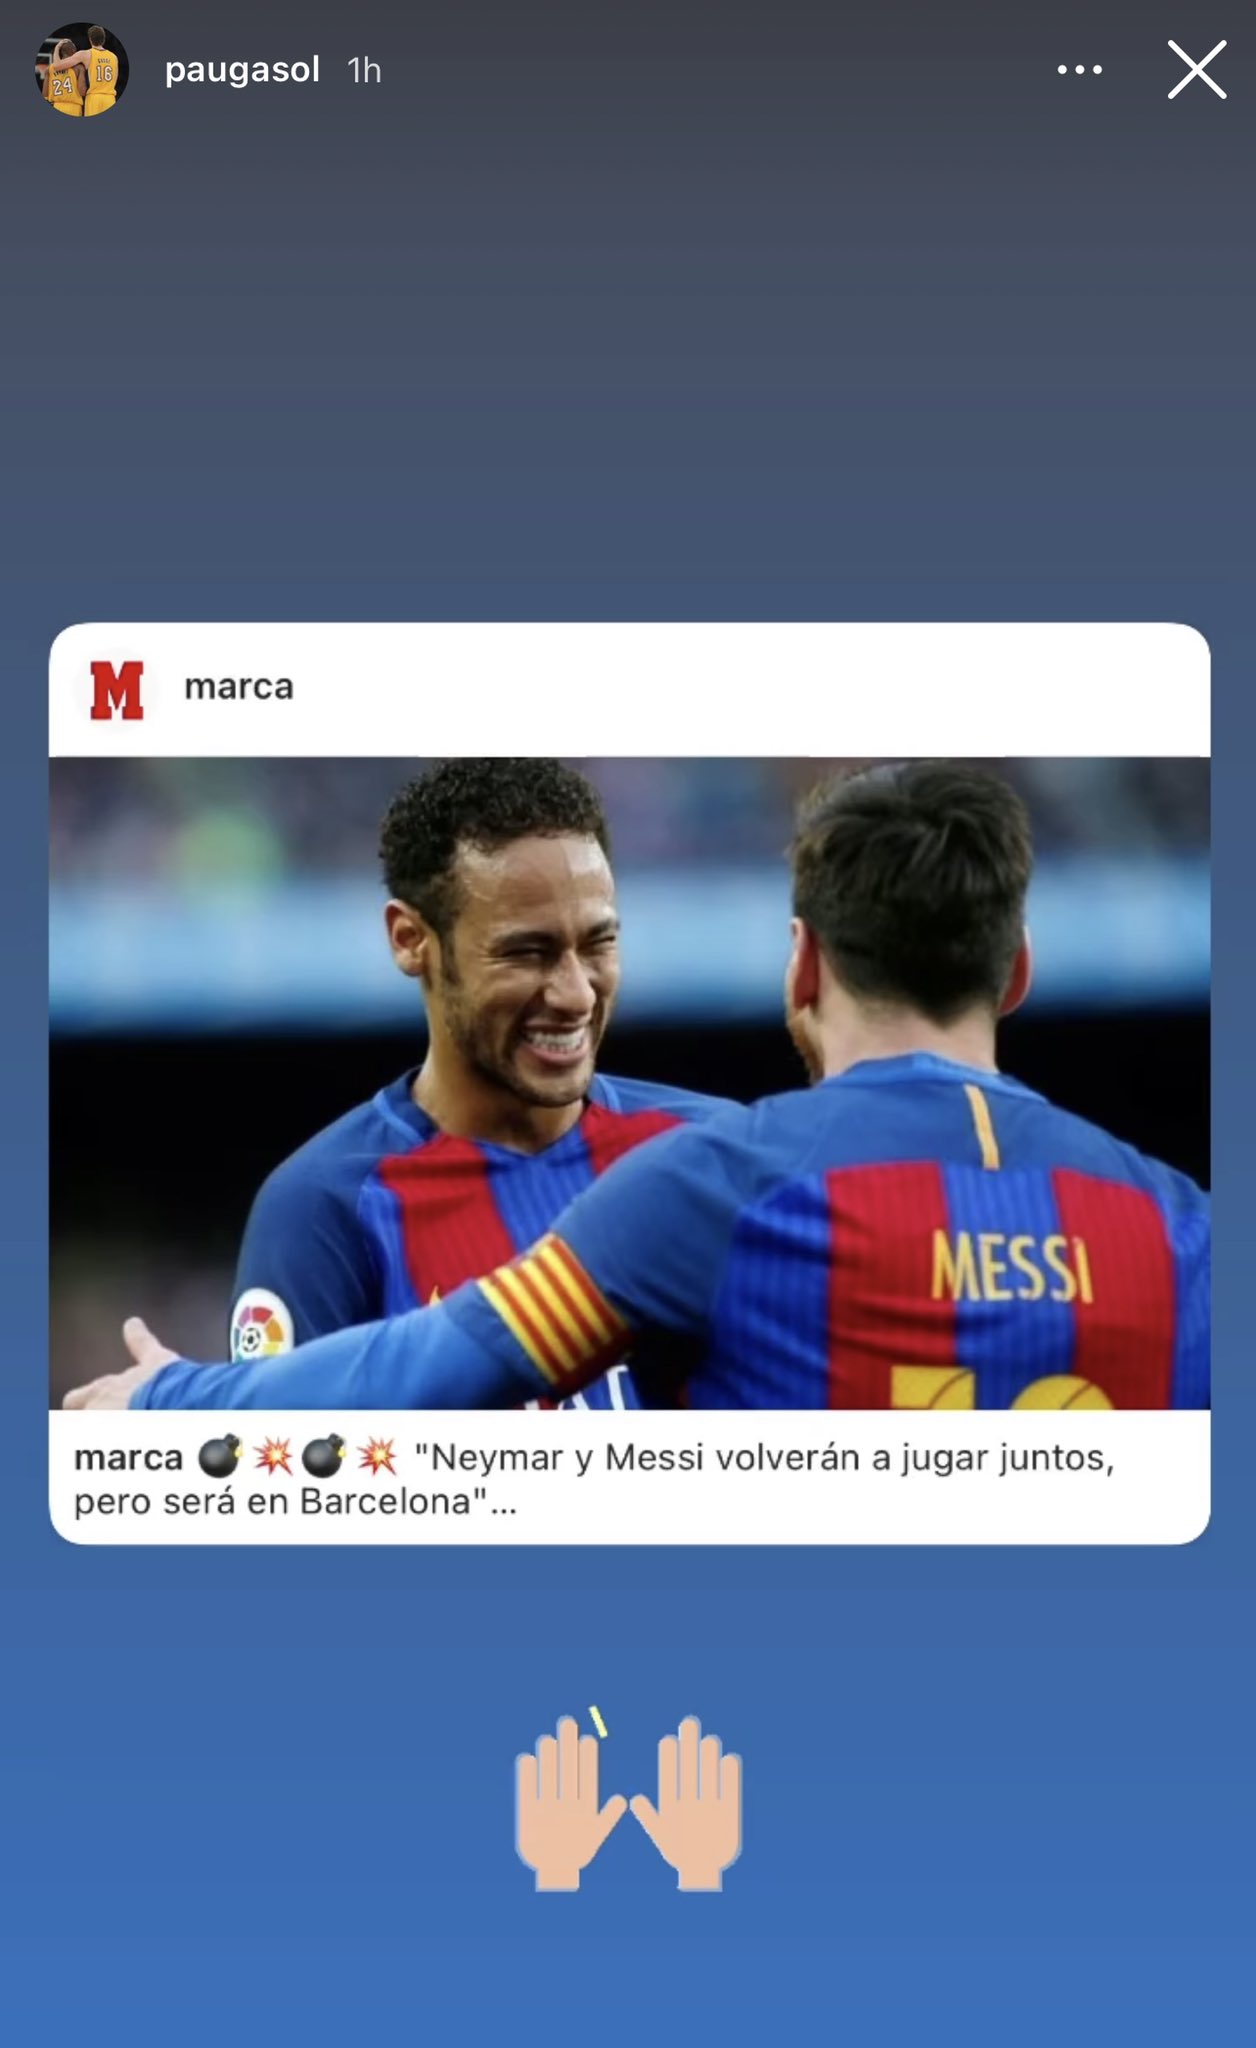 pau gasol neymar barcelona messi fichaje instagram